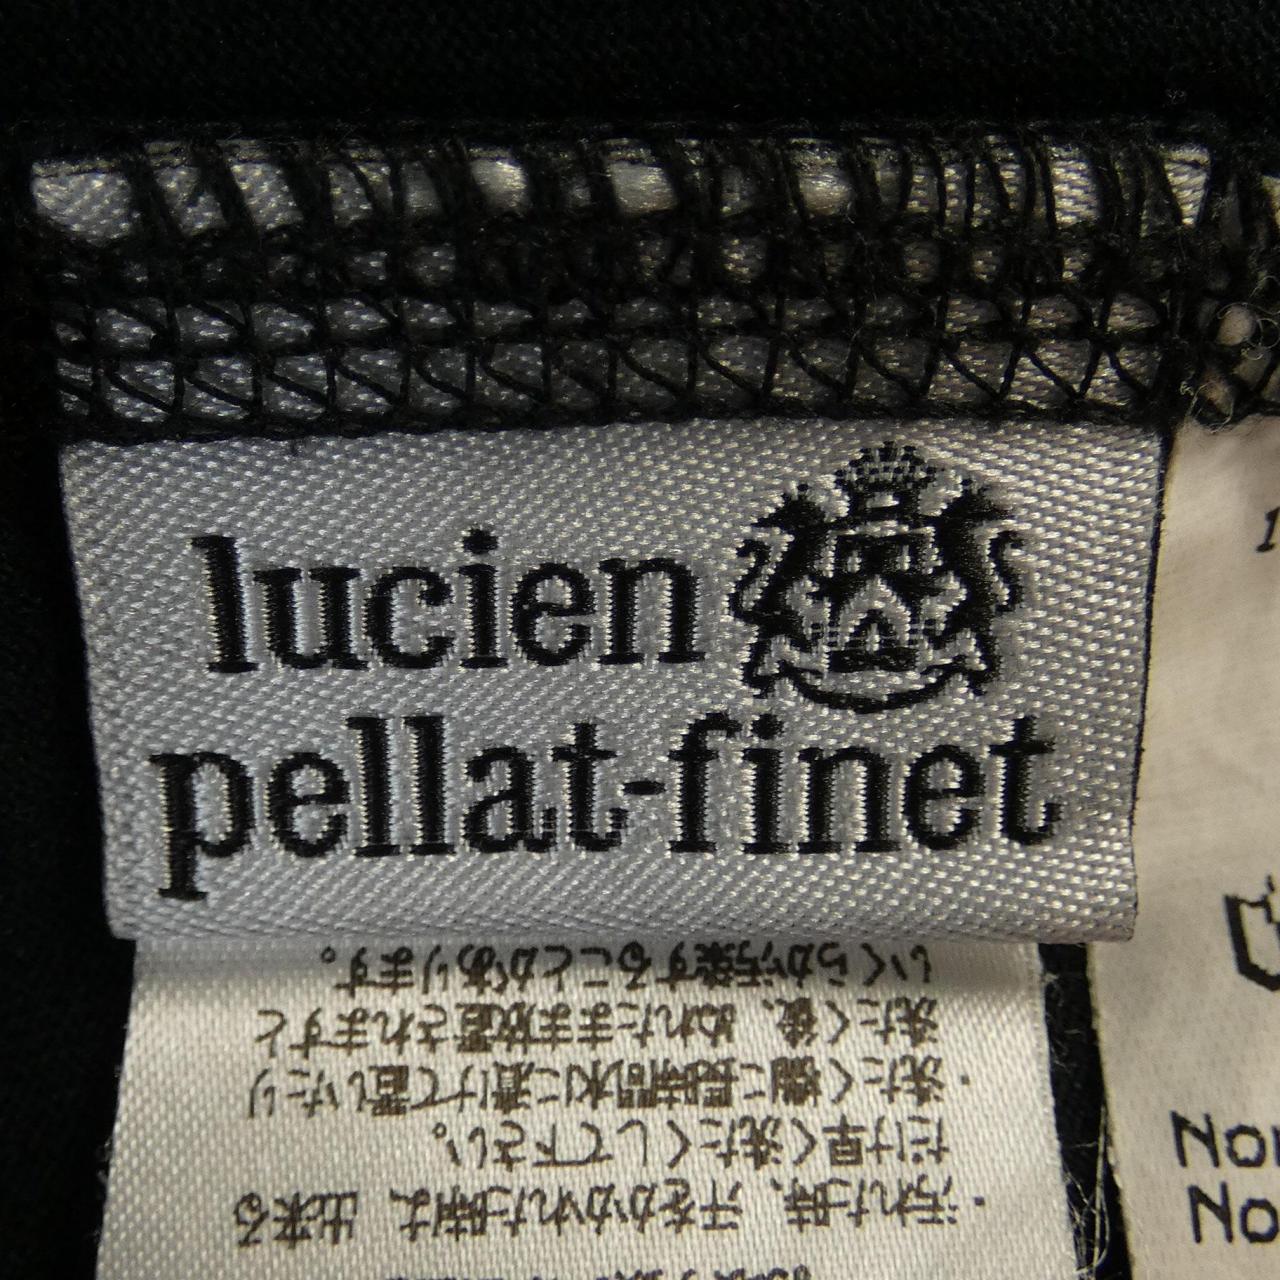 Lucien pellat-finet T-shirt